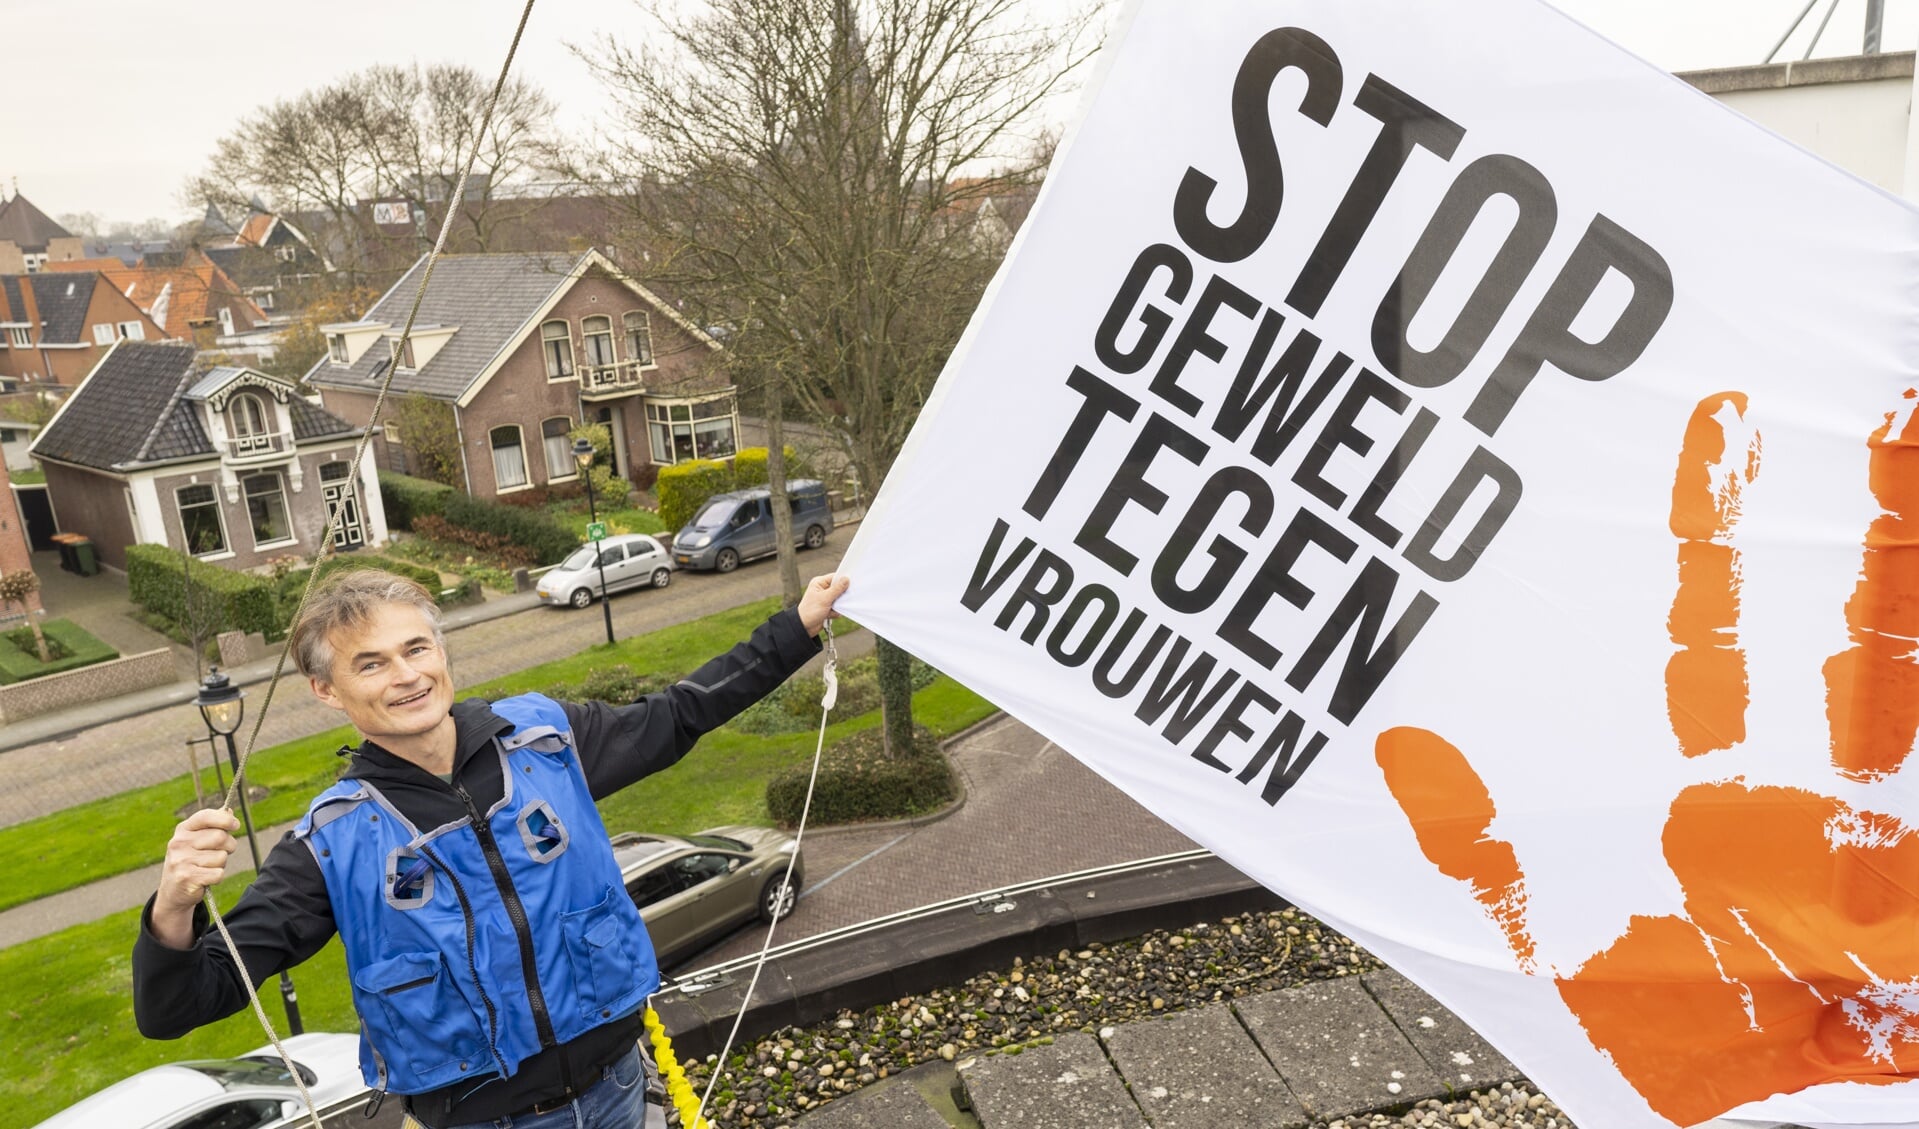 Wethouder Sigge van der Veek spreekt zich uit tegen geweld tegen vrouwen.